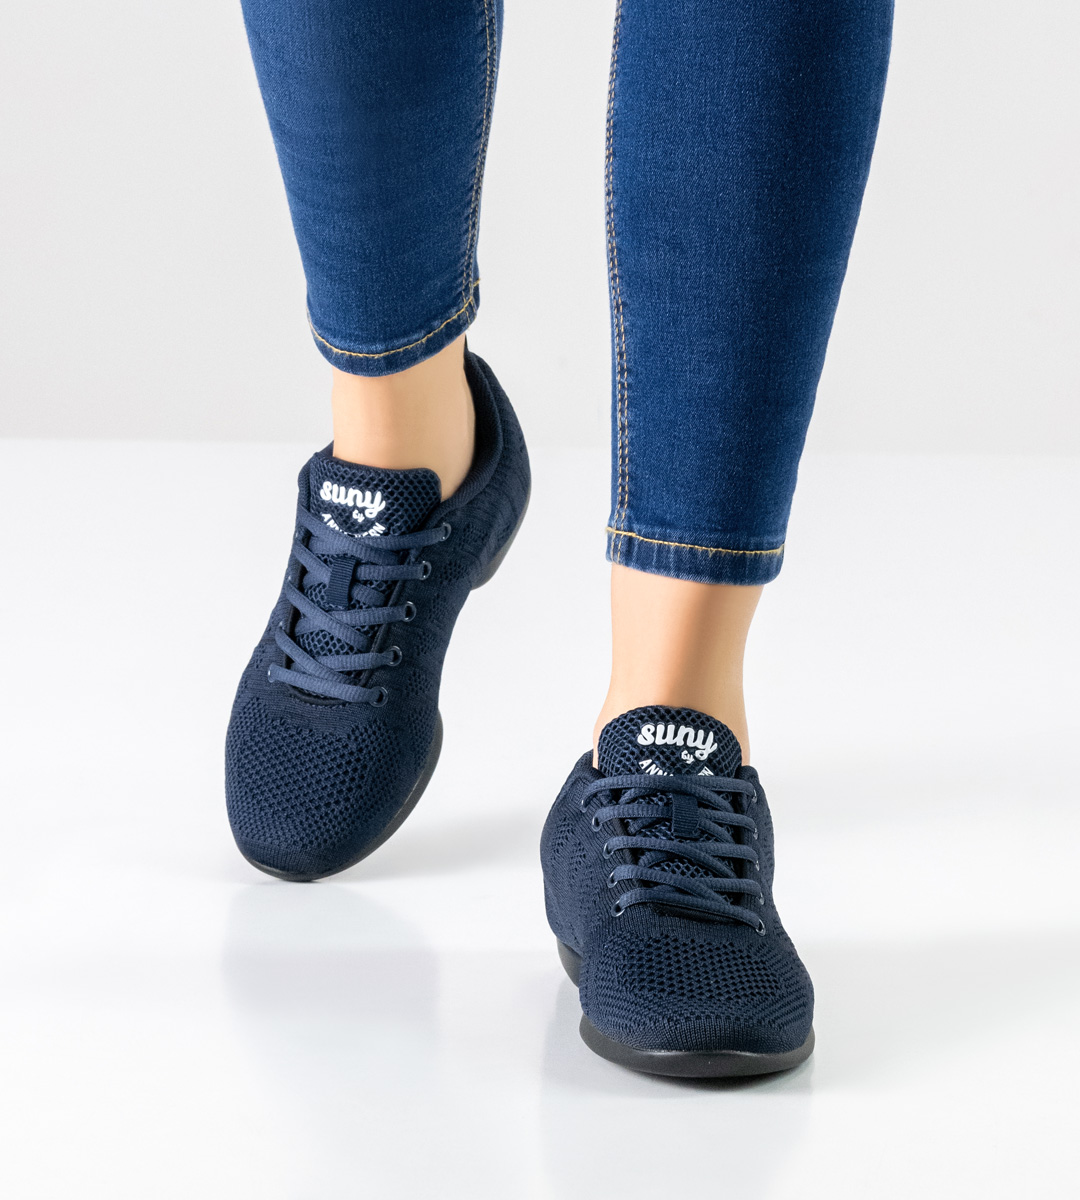 blaue Jeans in Kombination mit blauem Suny Damentanz Sneaker fürs Training